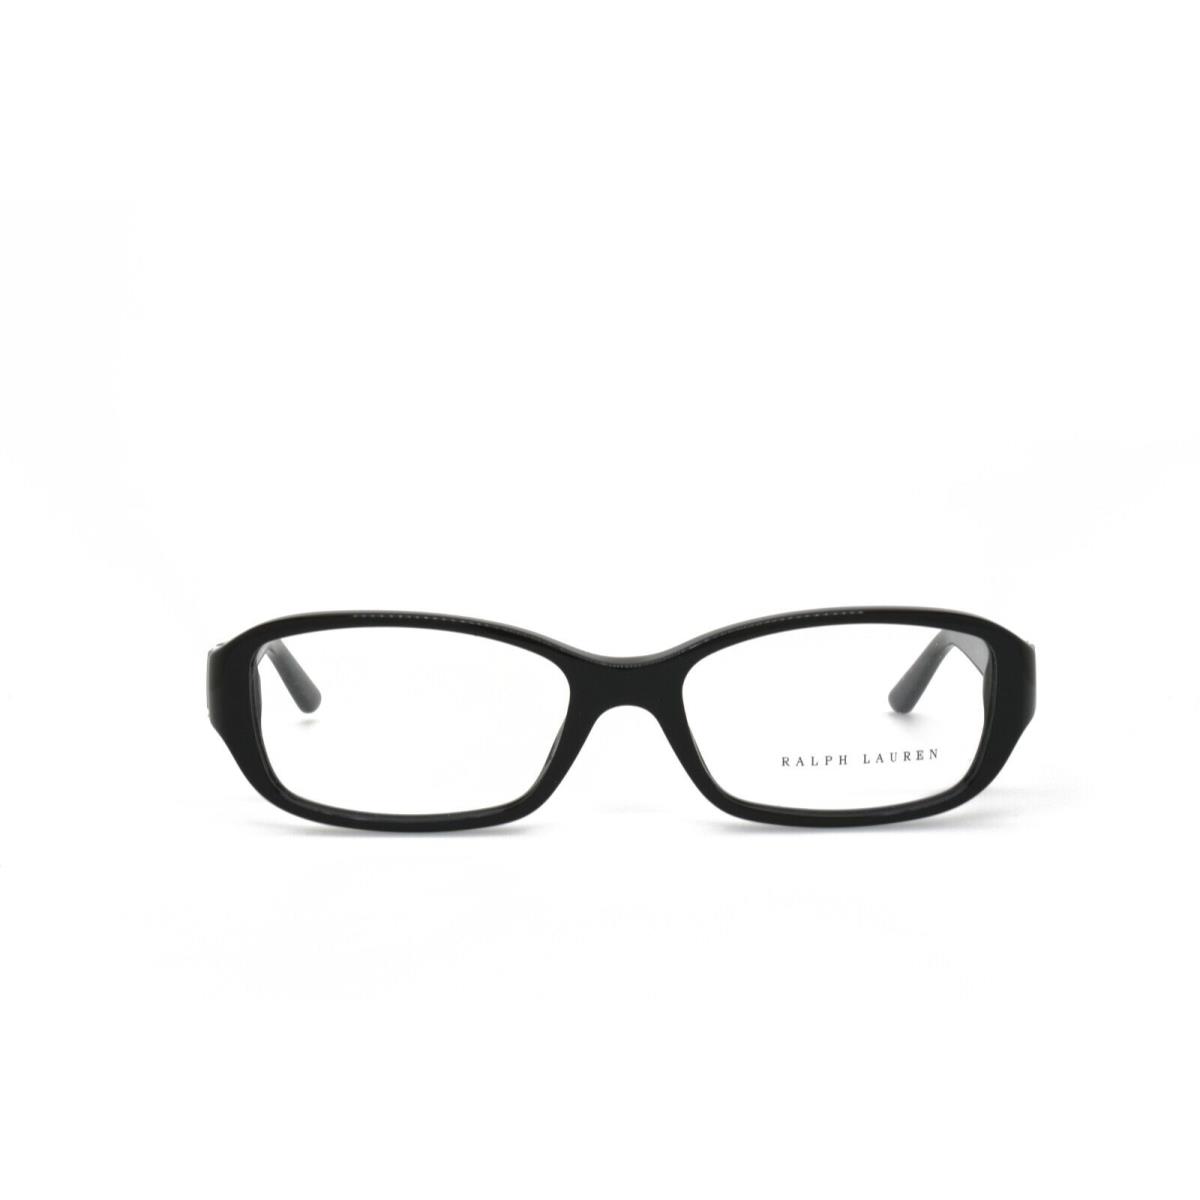 Ralph Lauren 6085 5001 52-16-135 Black Eyeglasses Frames